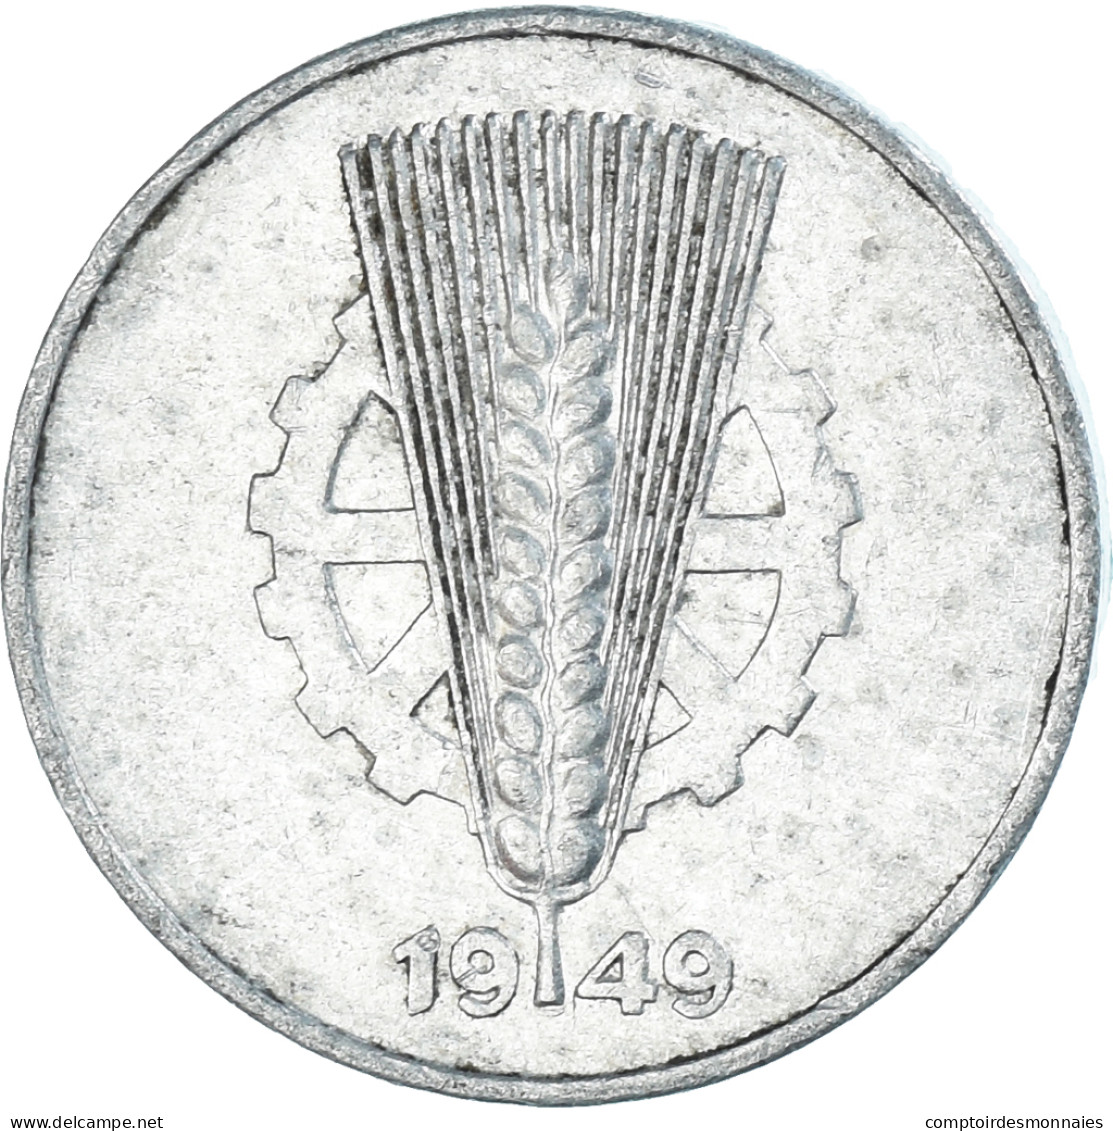 Monnaie, République Démocratique Allemande, 5 Pfennig, 1949 - 5 Pfennig